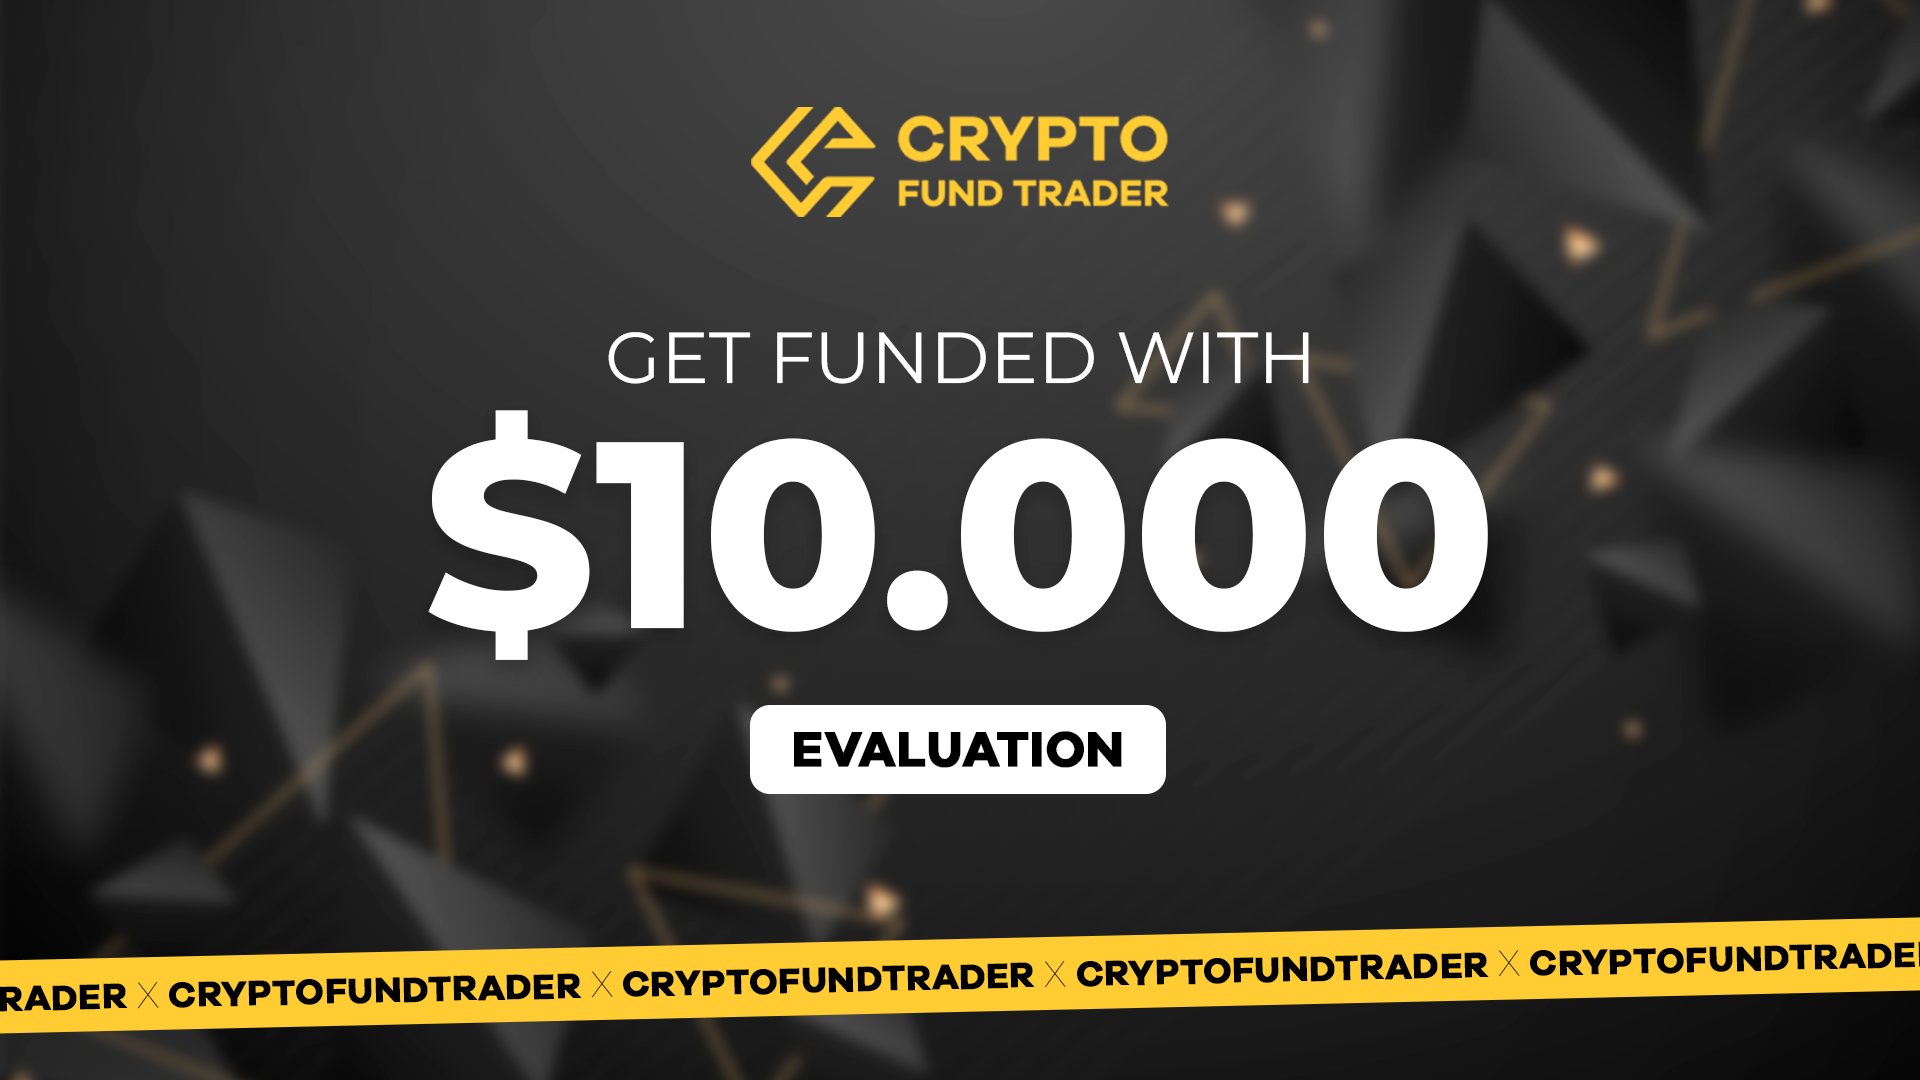 Crypto Fund Trader - $10.000 Evaluation Voucher 96.05 usd